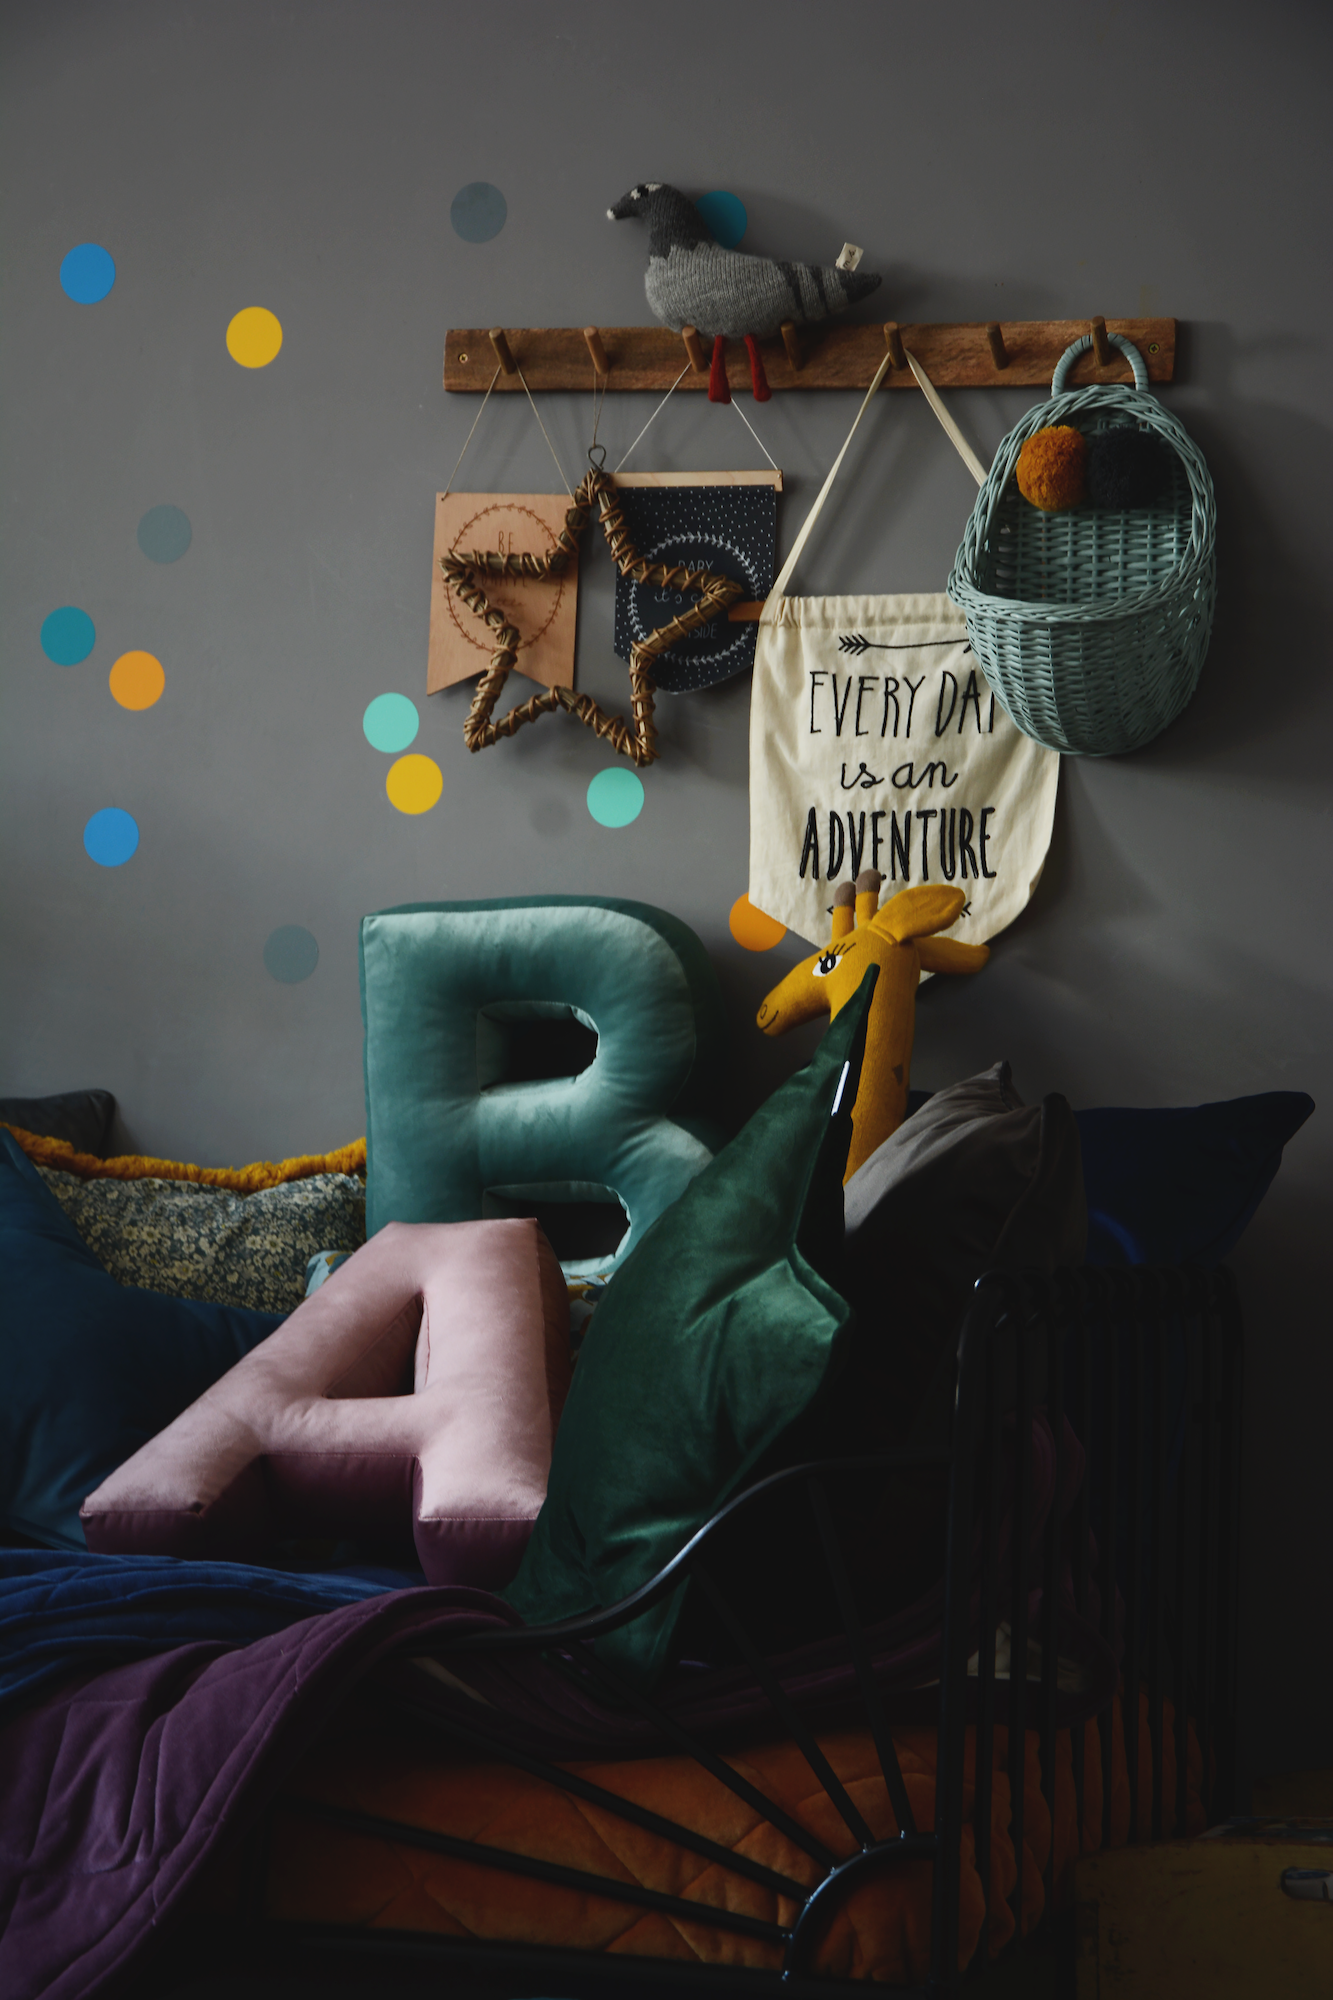 Poduszki literki welurowa A i B od Bettys Home w pokoiku dziecięcym w ciemnych kolorach 